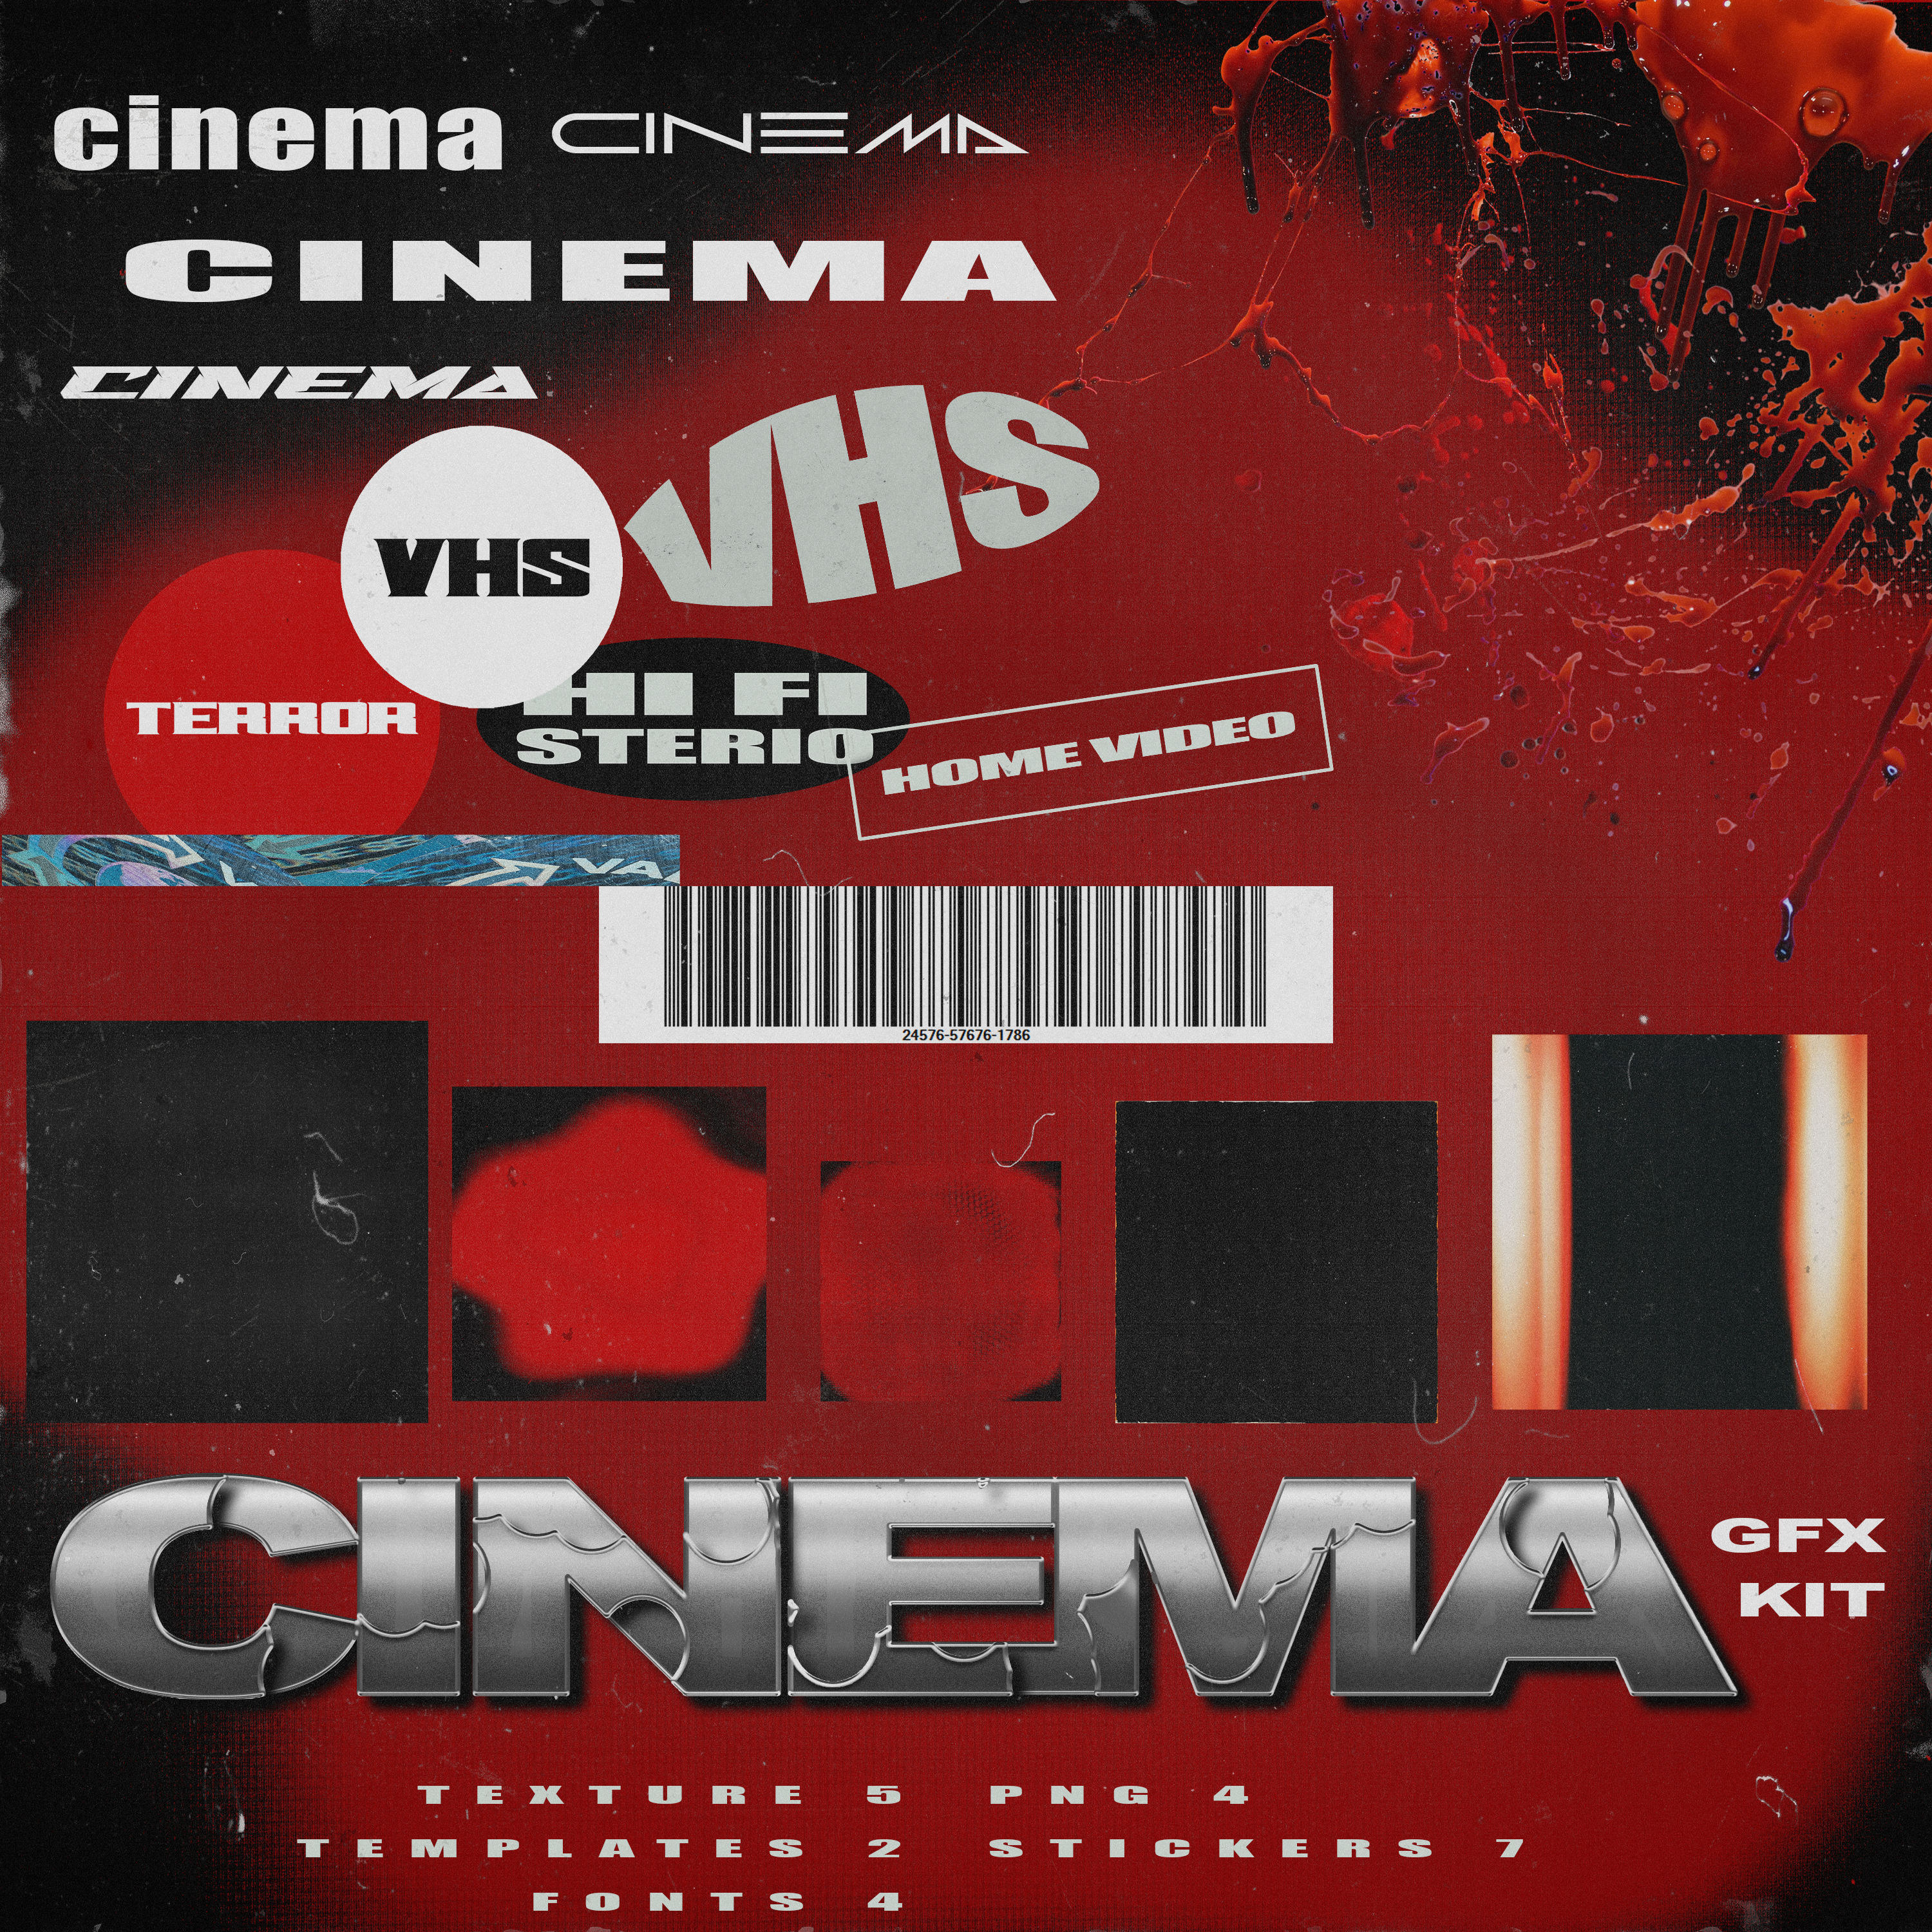 Cinema Bunudle (Samples + GFX Kit)